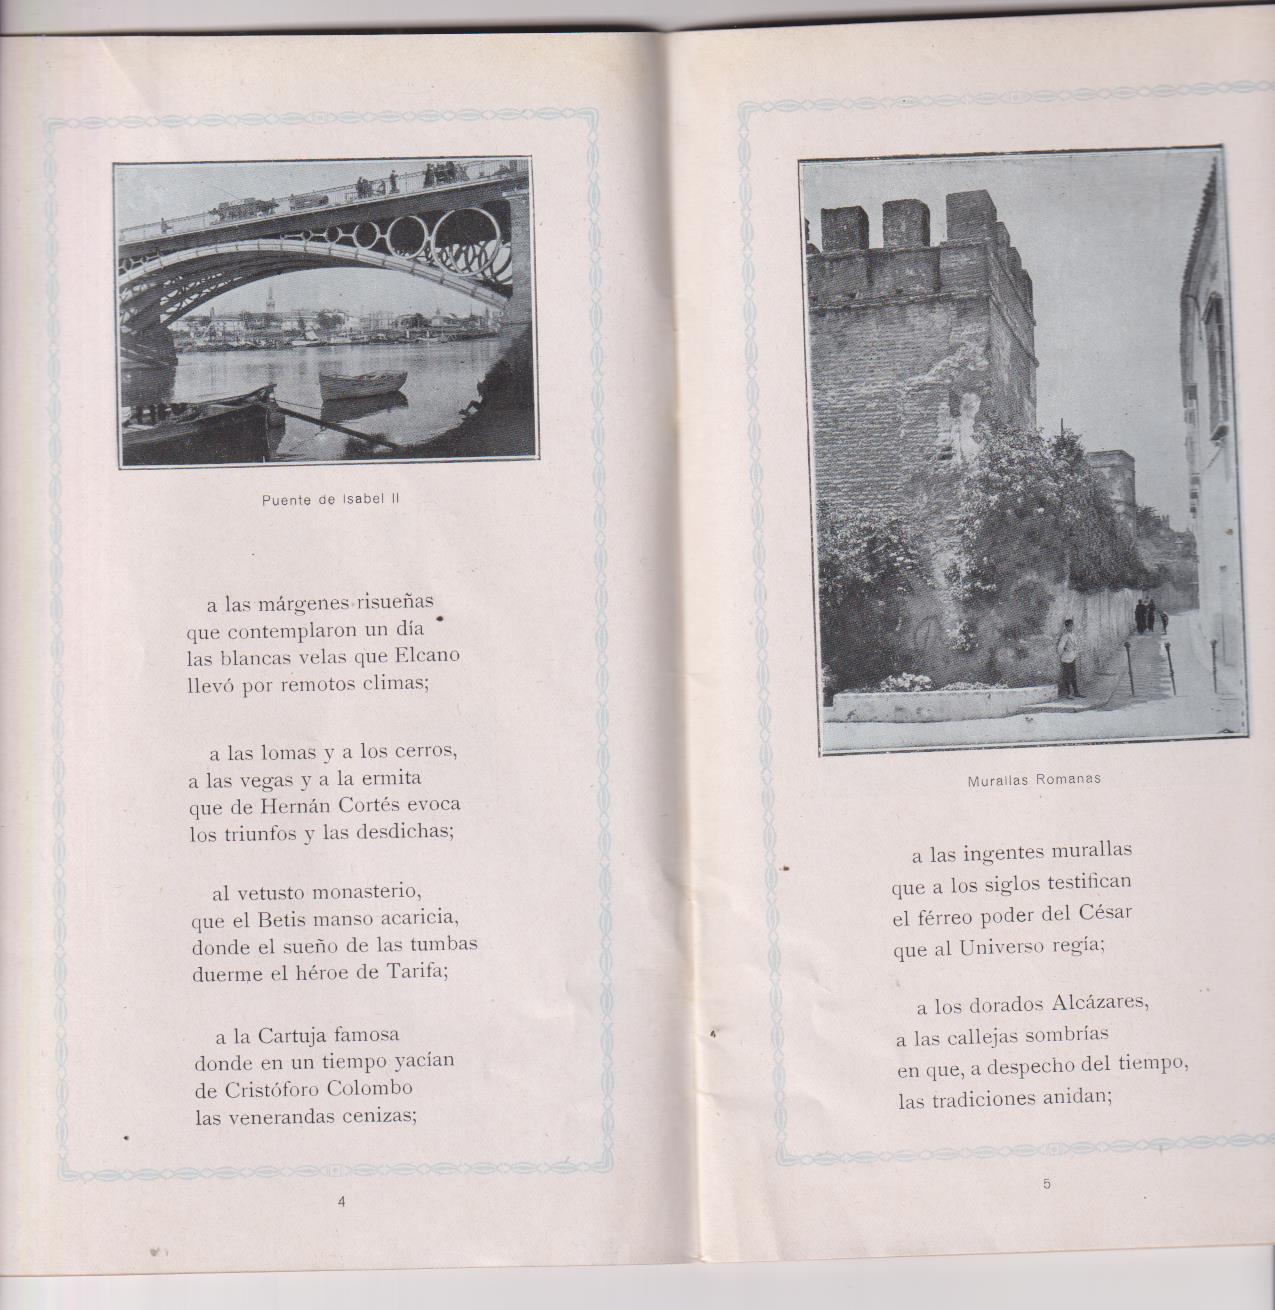 Sevilla. Poesía (1919) por Luis Montoto (17x12) 40 páginas con 29 Fotografías de Bellas vistas de Sevilla